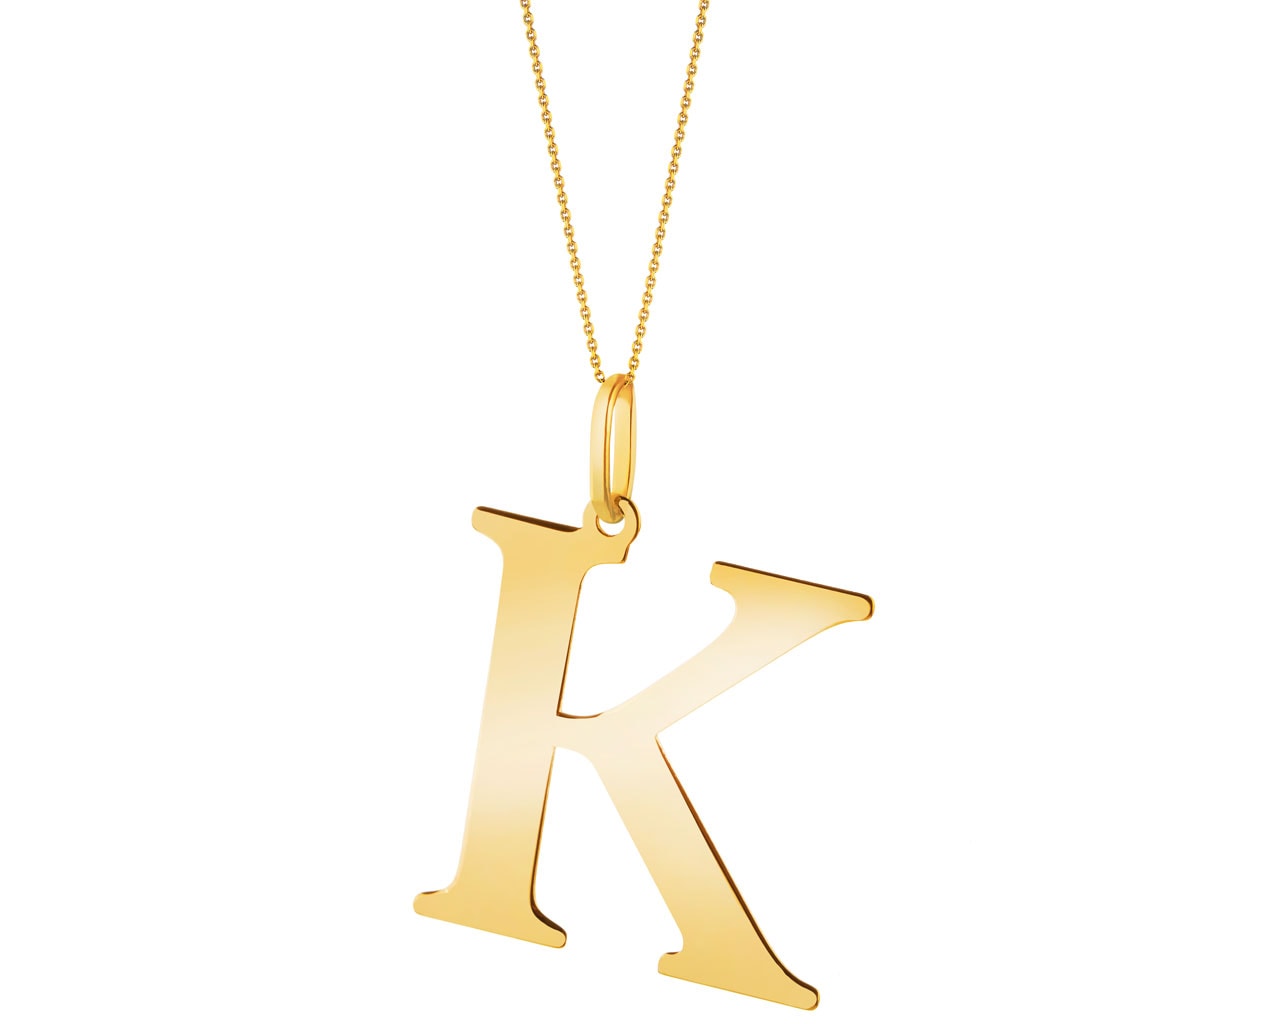 Złota zawieszka - litera K